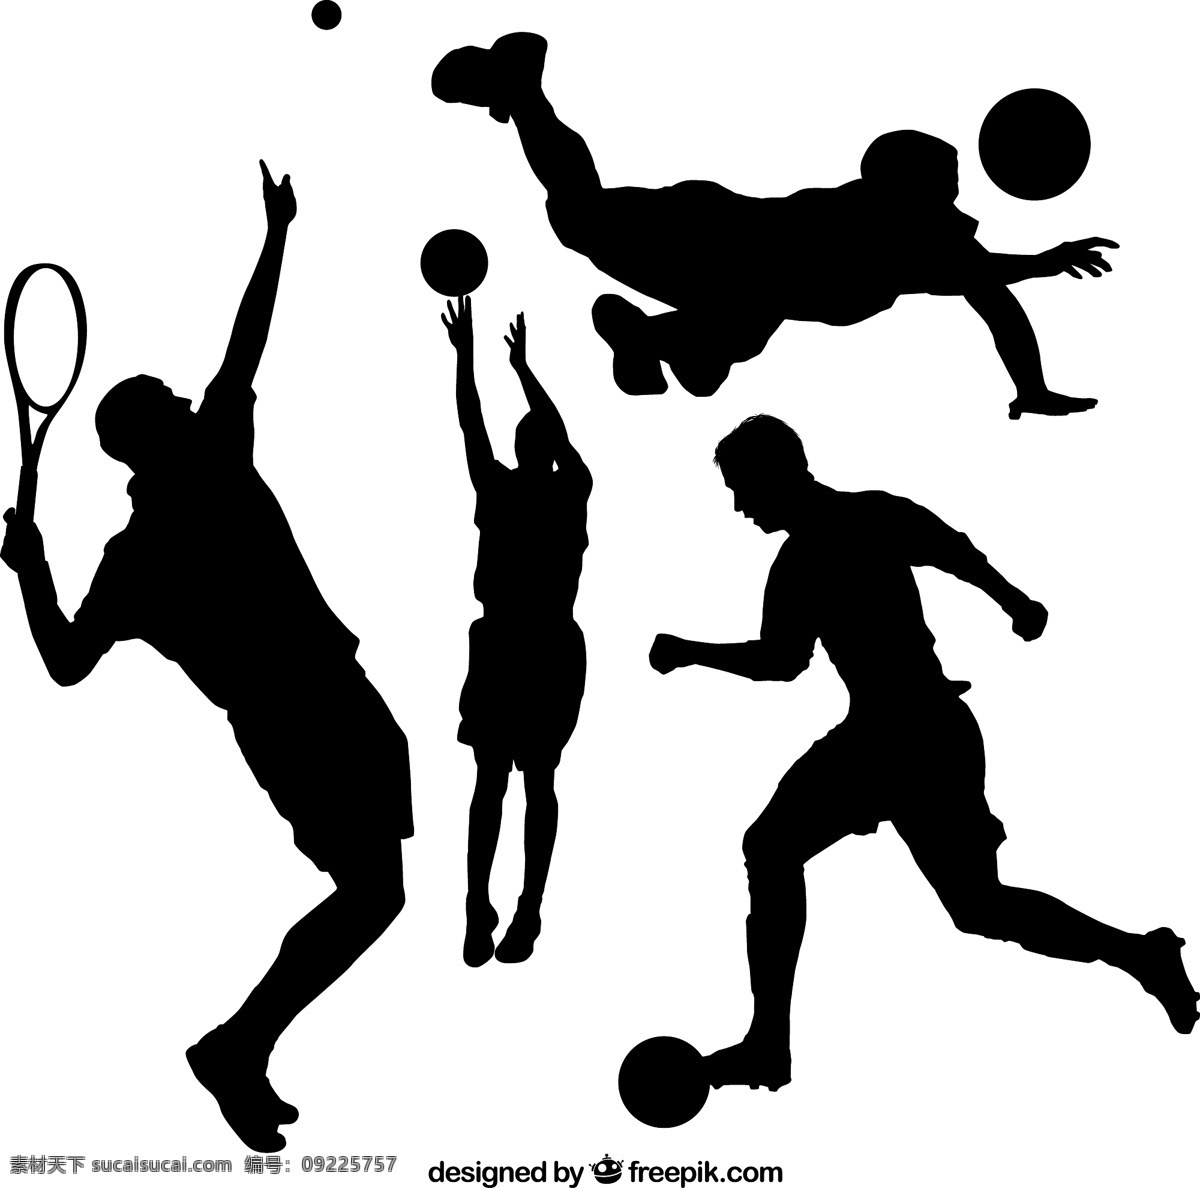 款 球类 动感 运动 人物 剪影 矢量 网球 篮球 排球 足球 男子 矢量图